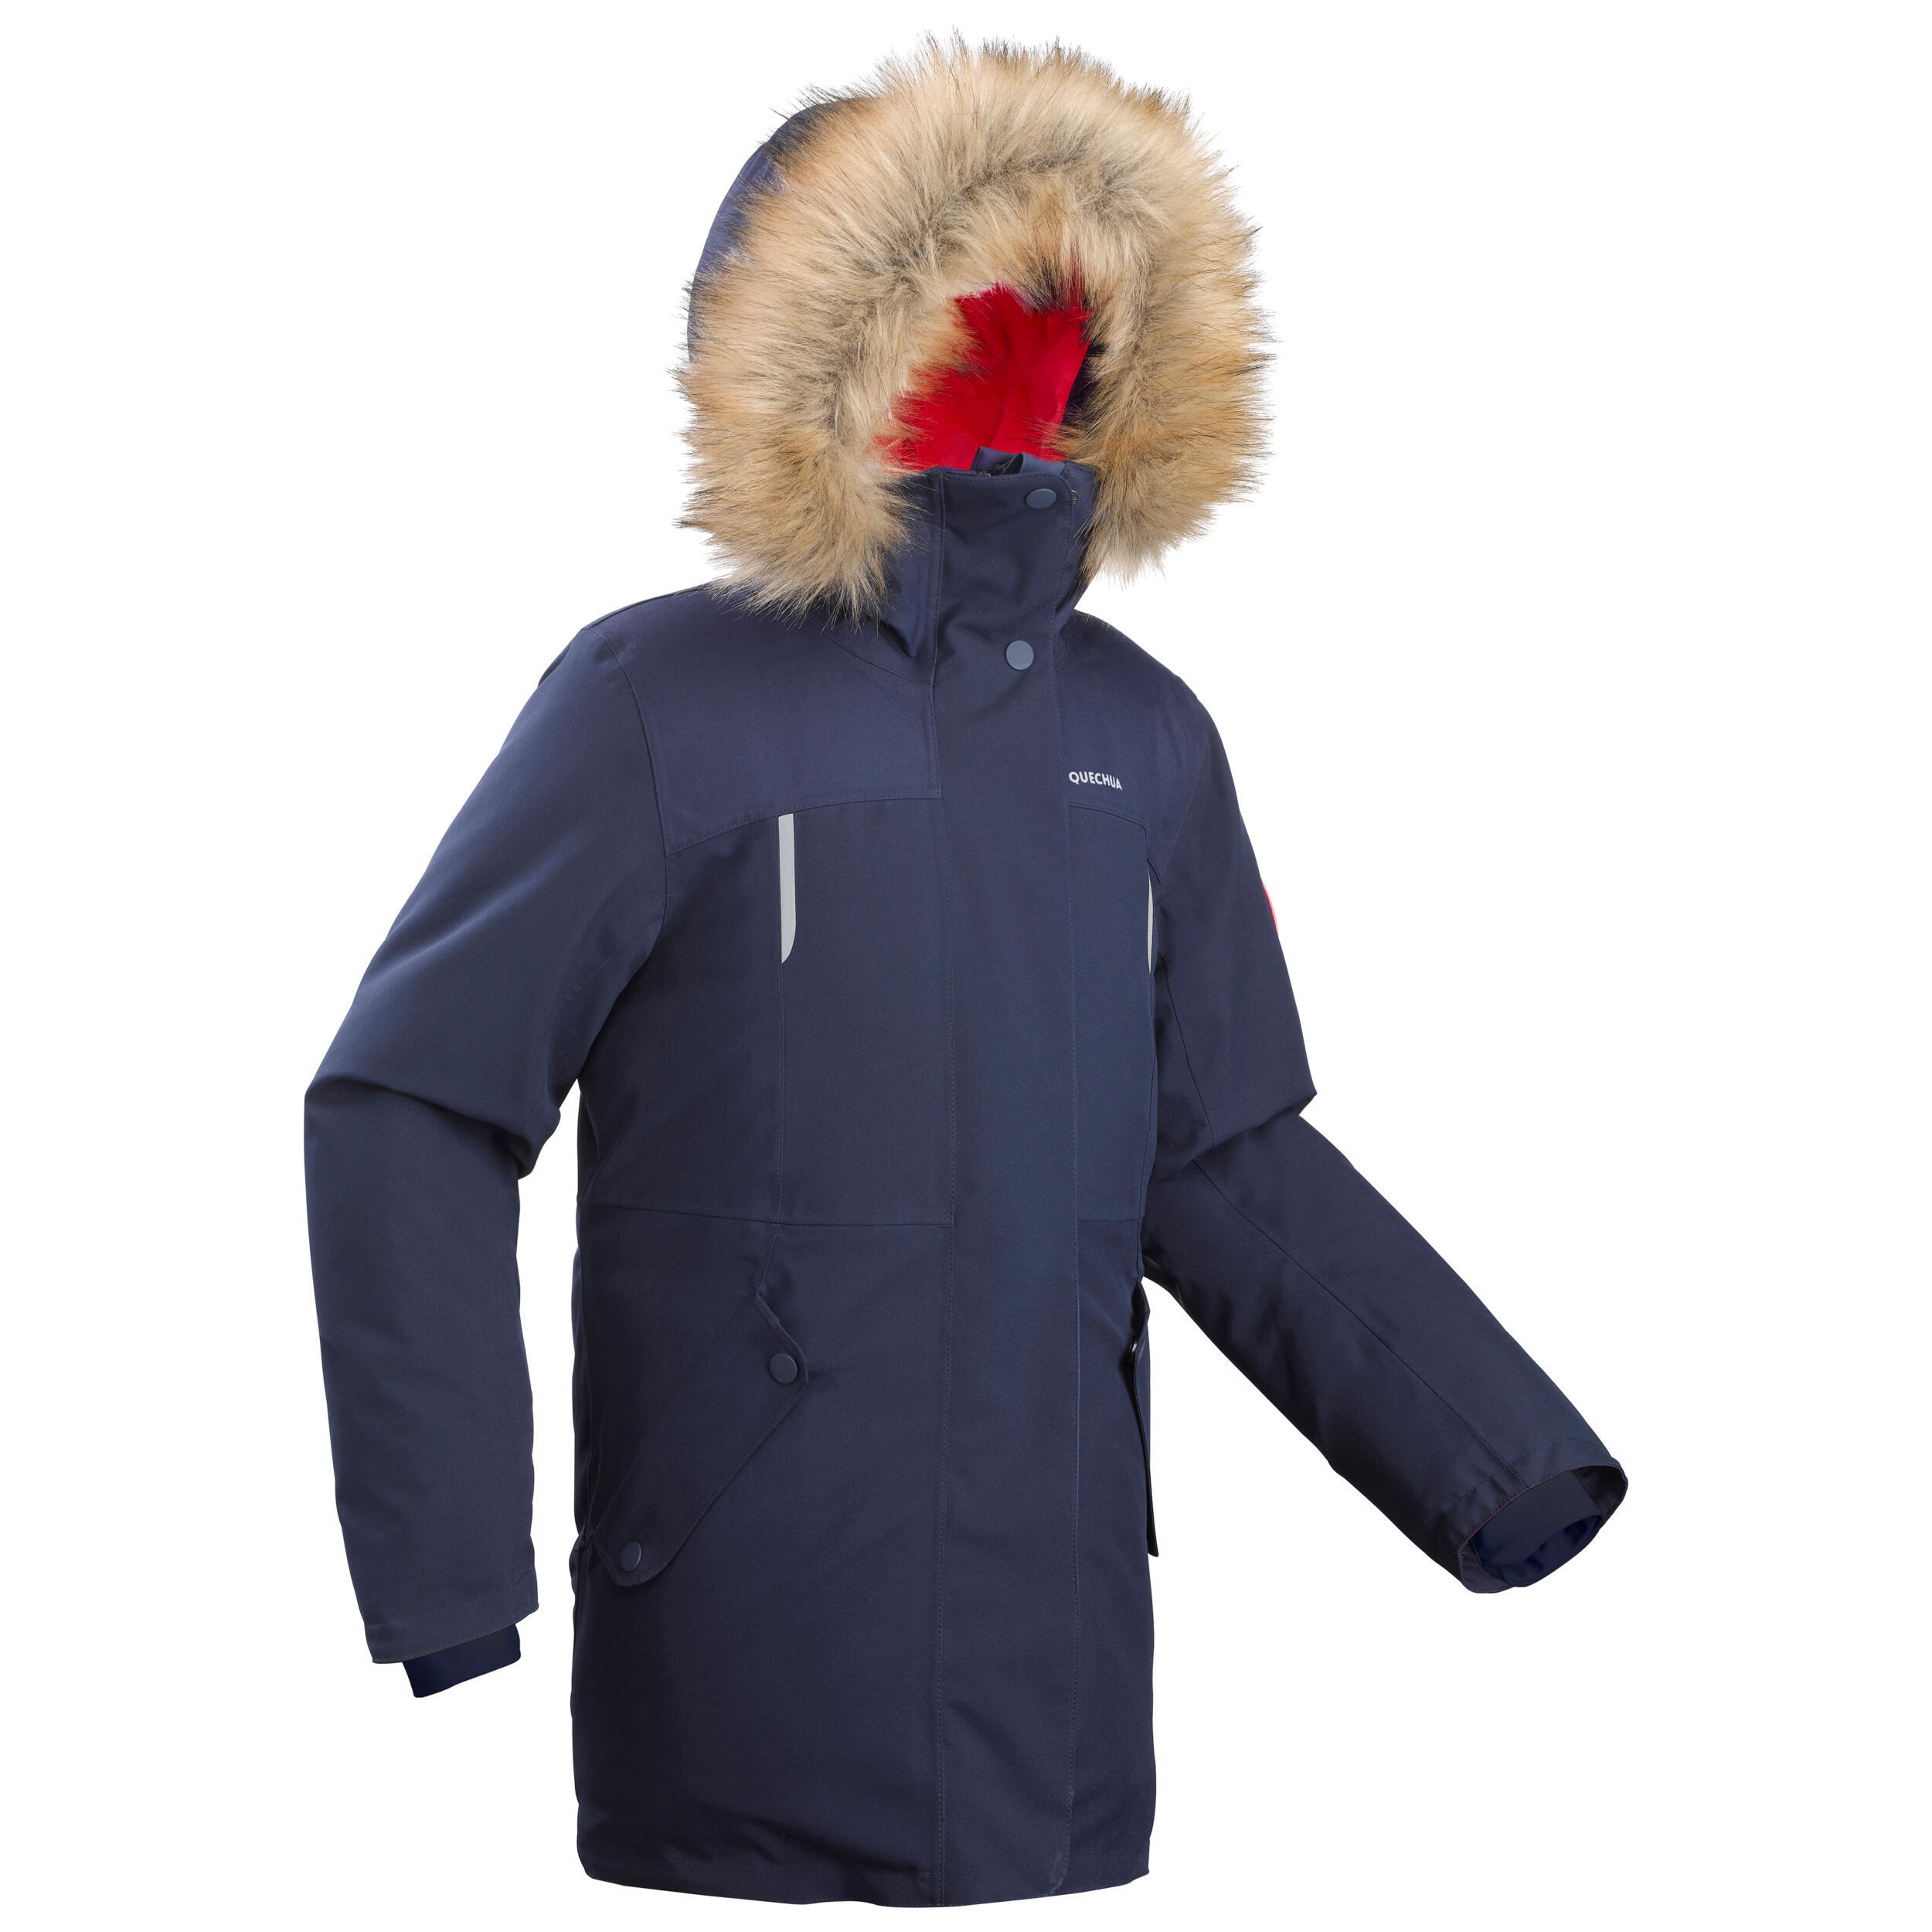 Куртка-парка Quechua SH500 теплая непромокаемая походная детская, синий куртка h